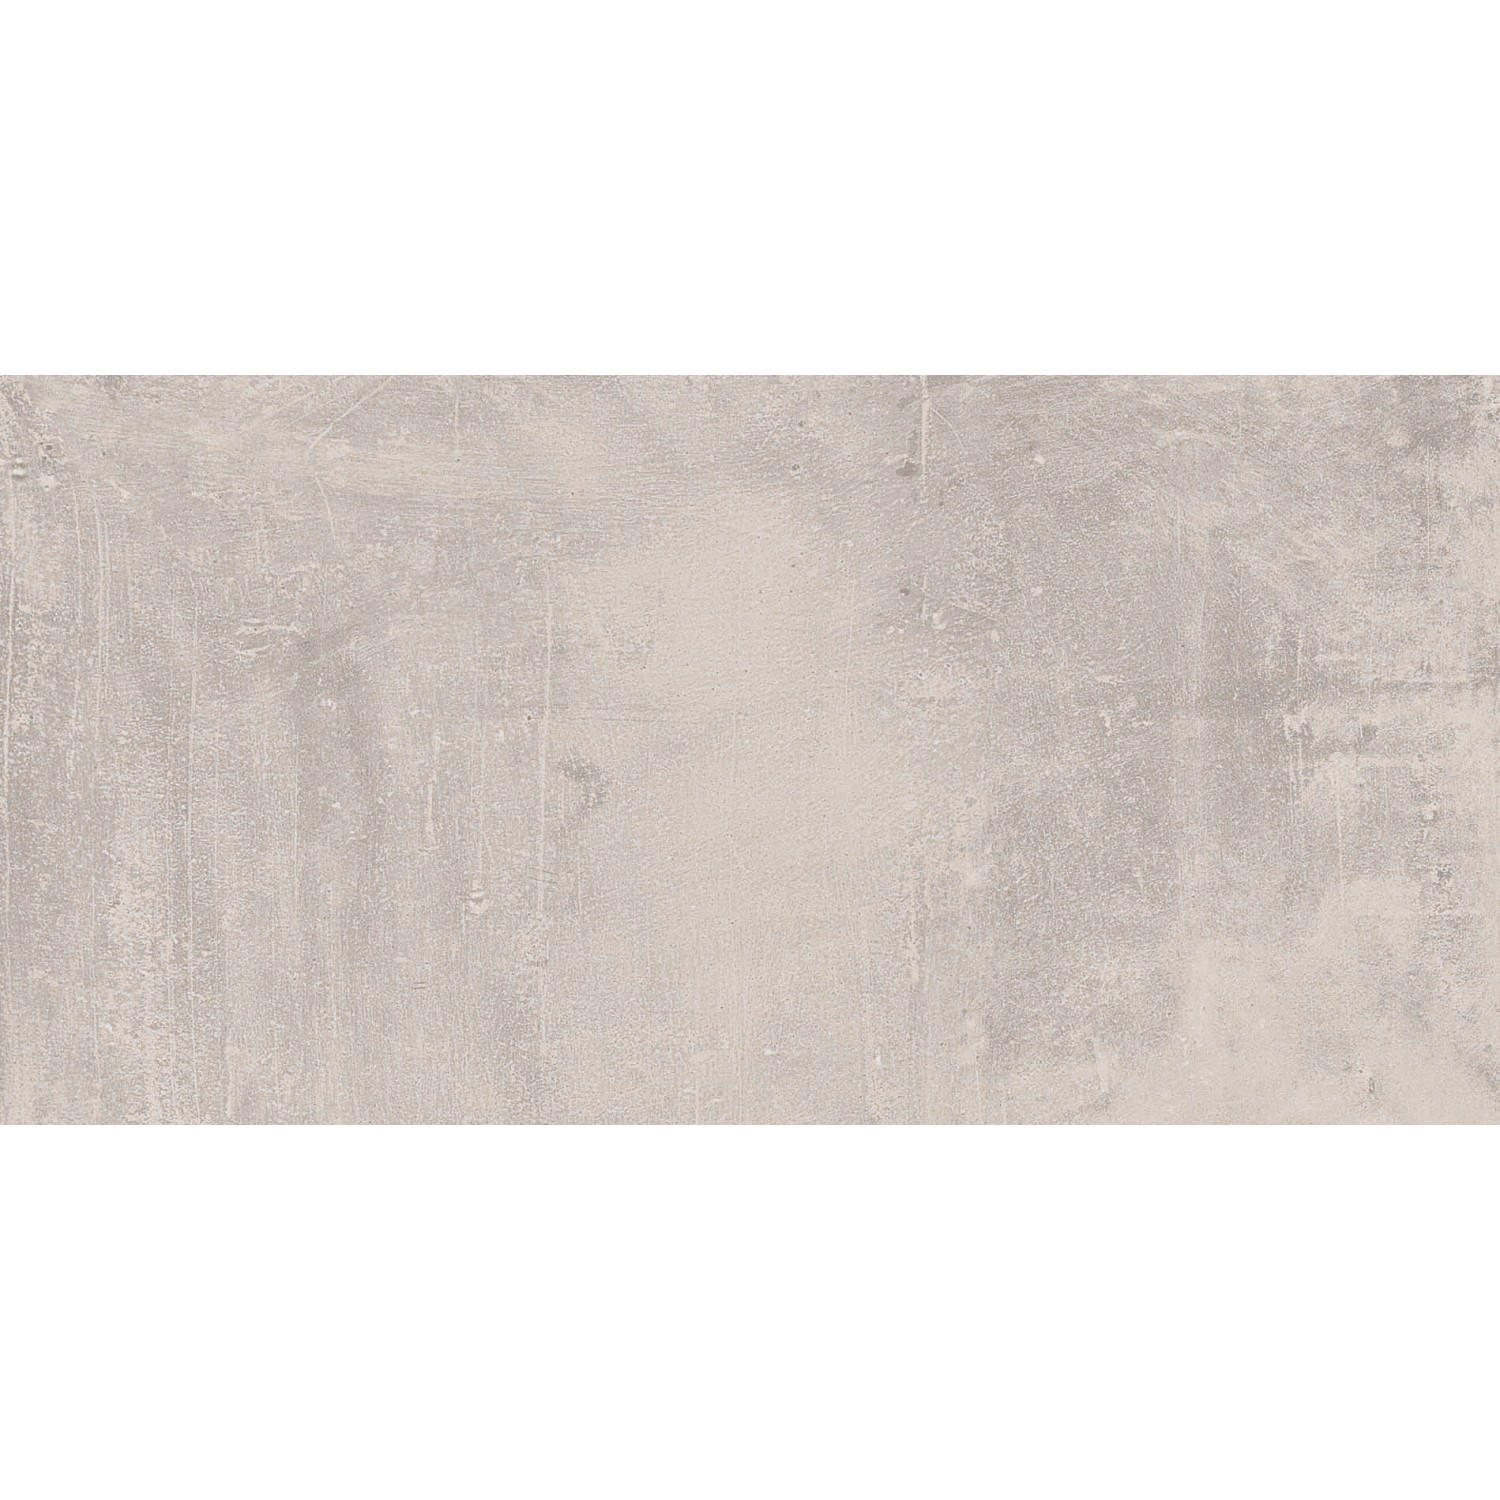 Bodenfliese New Concrete Feinsteinzeug Grau Glasiert Matt 30 cm x 60 cm